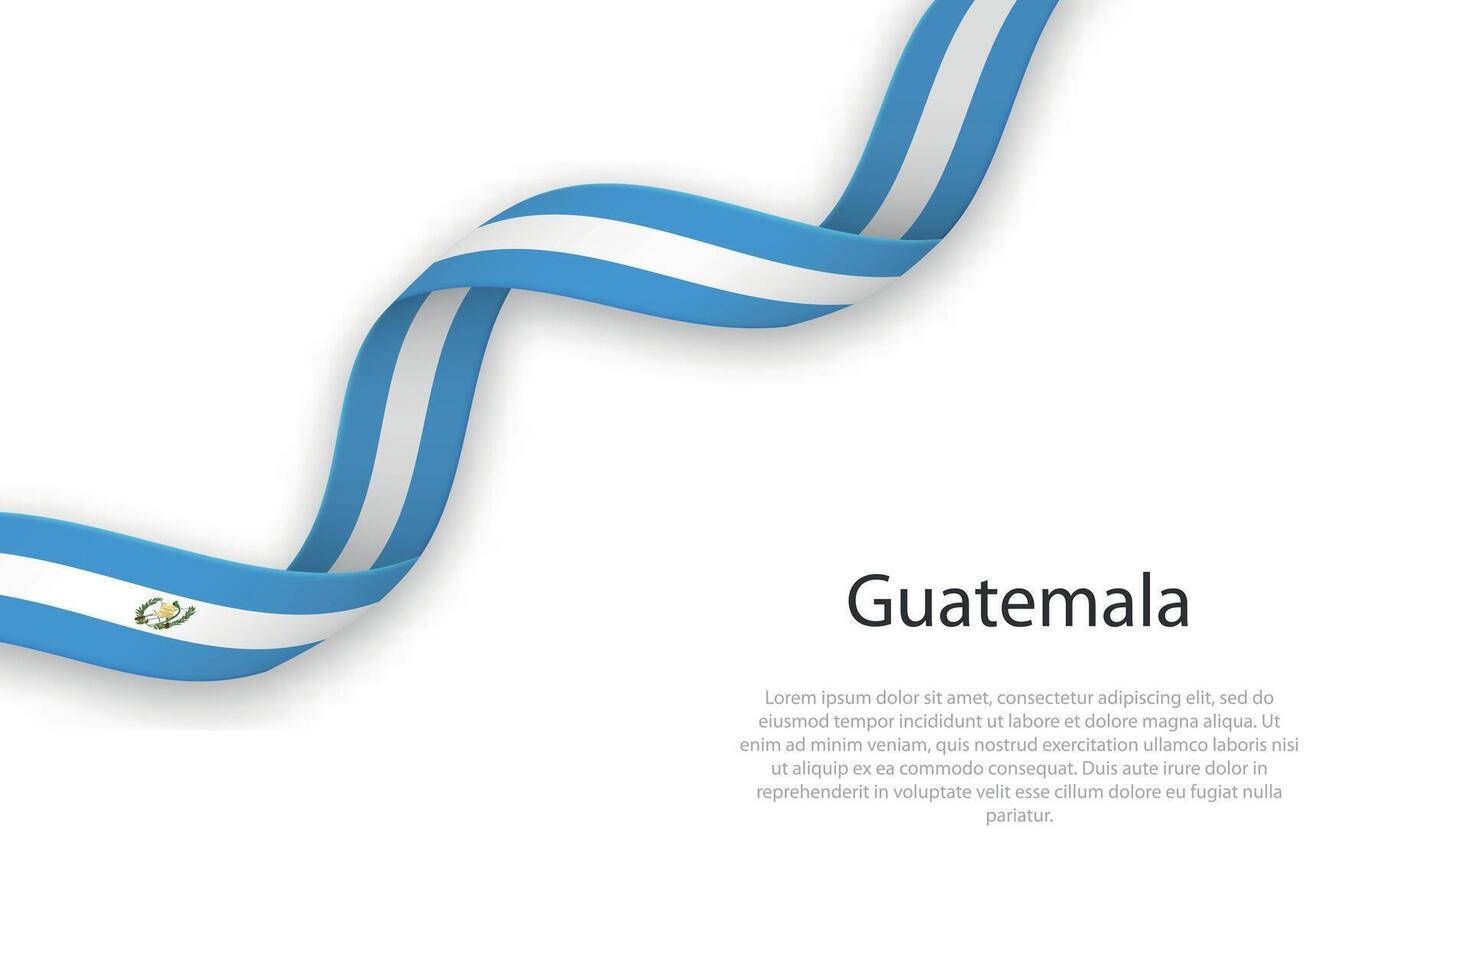 vinka band med flagga av guatemala vektor